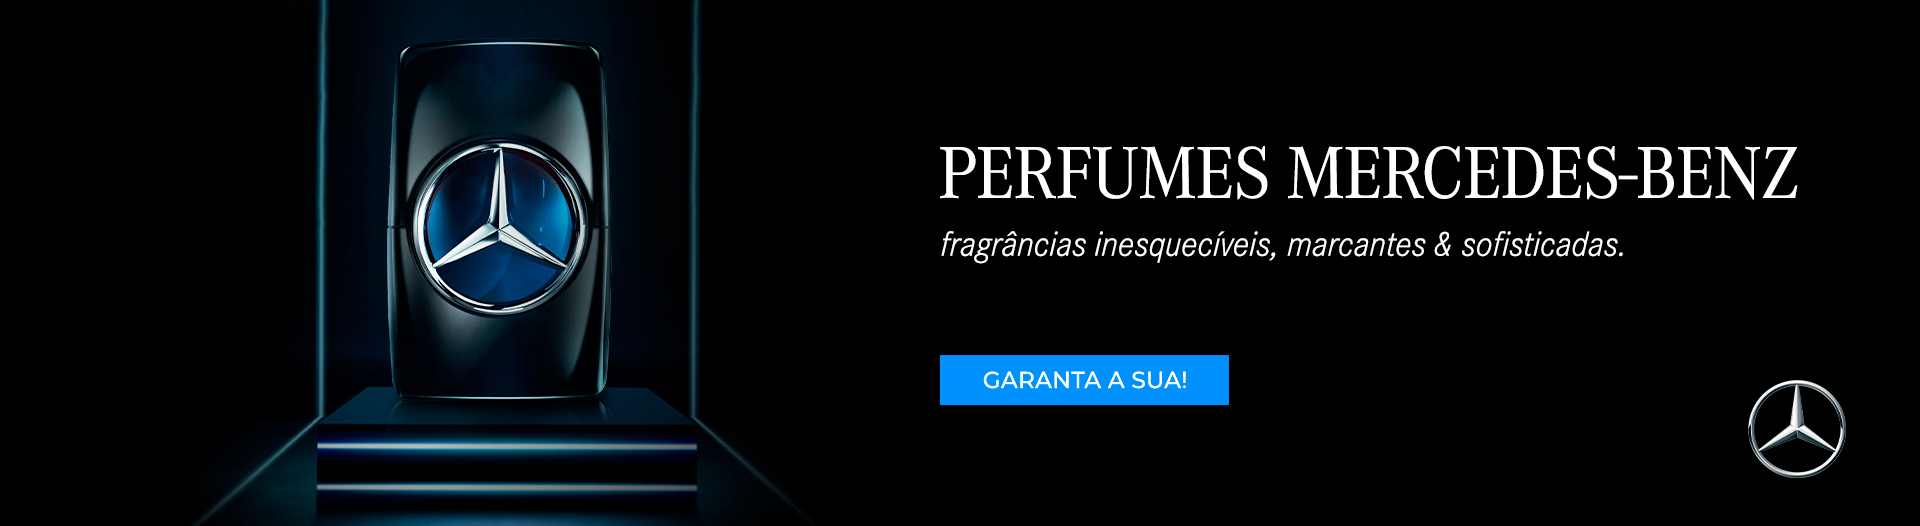 MB - perfumes